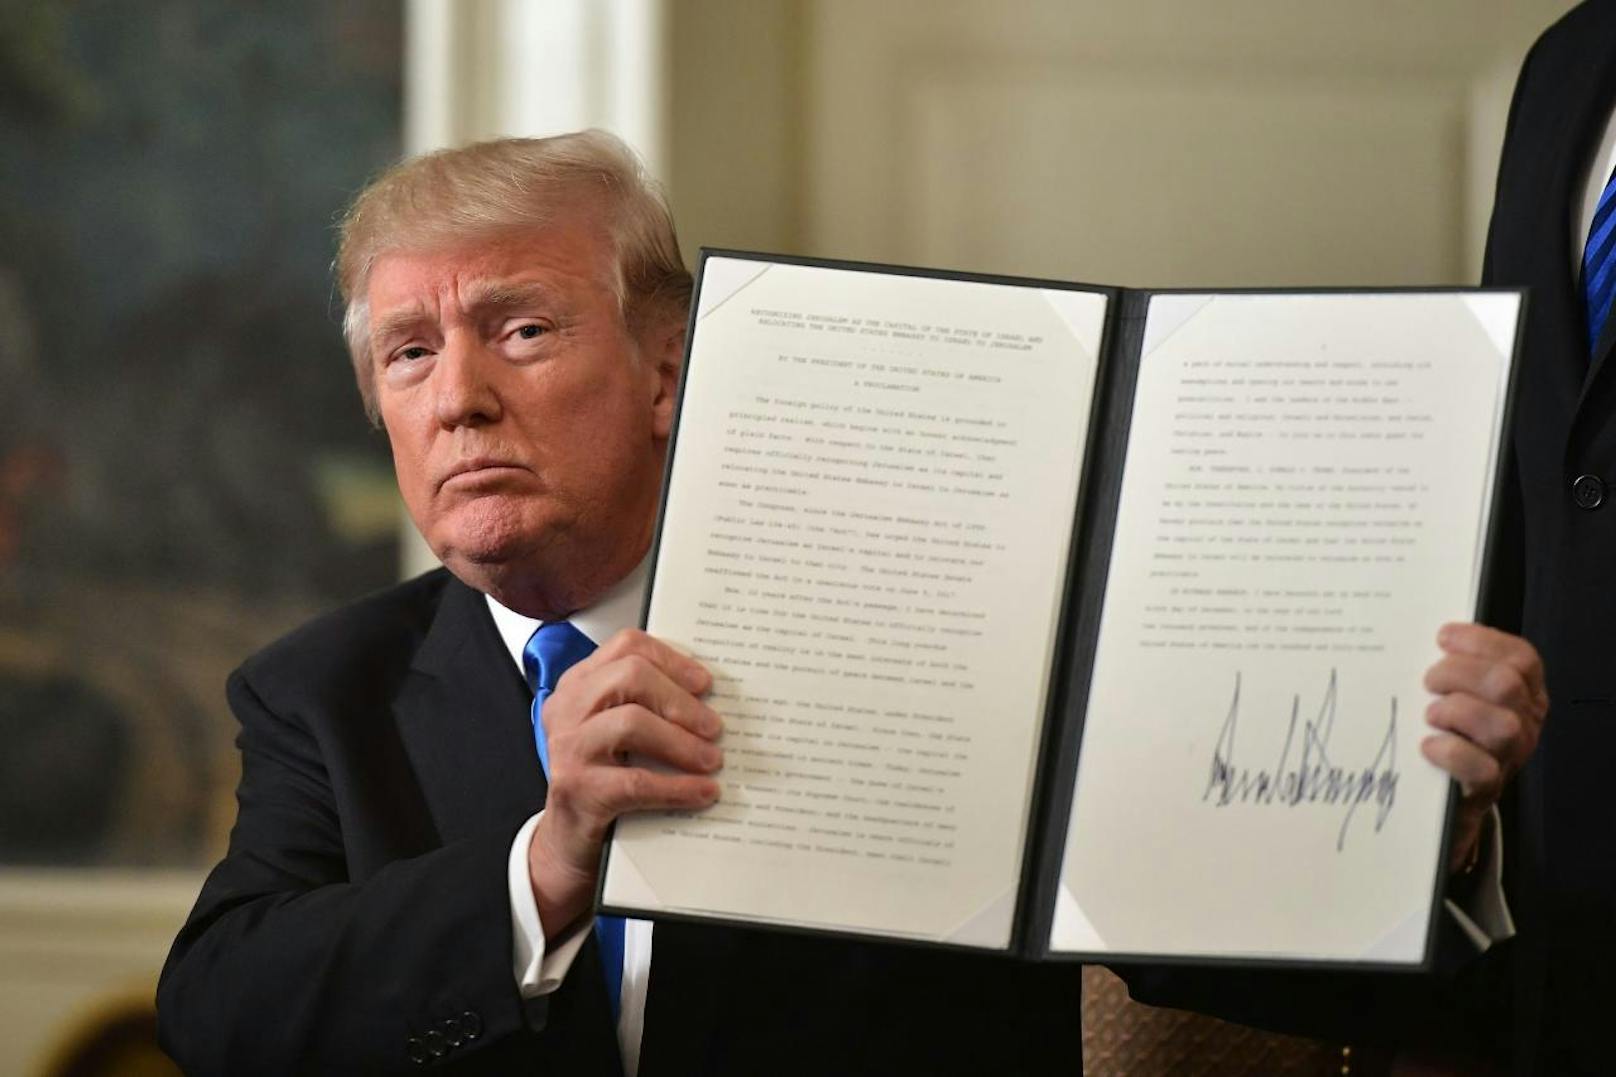 Am Ende der Ansprache am Mittwoch präsentierte Trump das unterschriebene Memorandum, welches die offizielle Anerkennung der USA von Jerusalem als Israels Hauptstadt besiegelt.